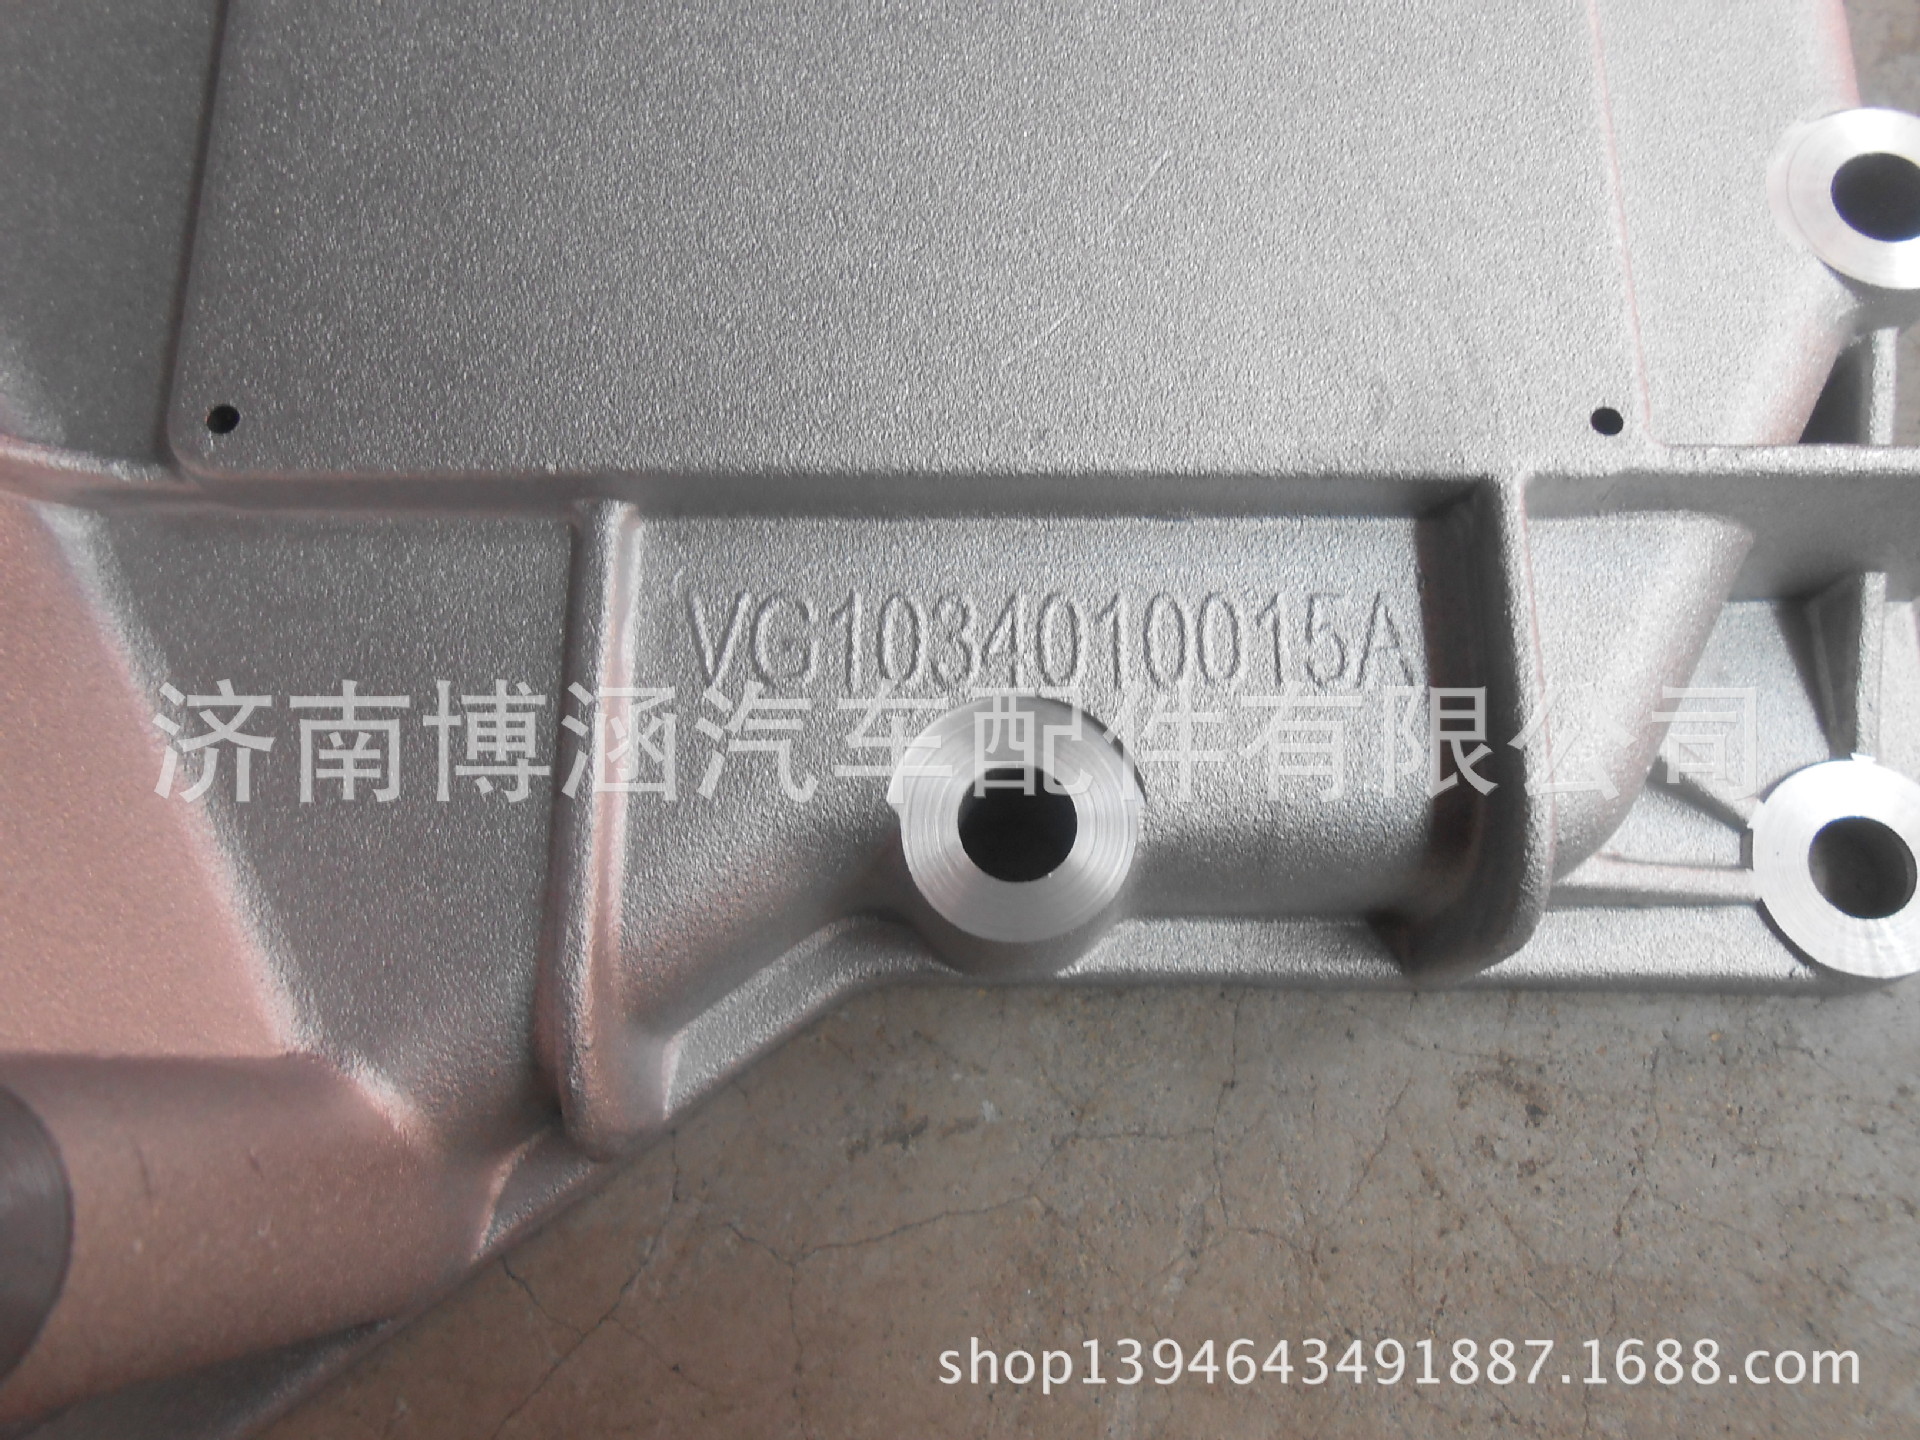 厂家直销 优质机油冷却器盖 散热器盖 中国重汽 VG1034010015A示例图2